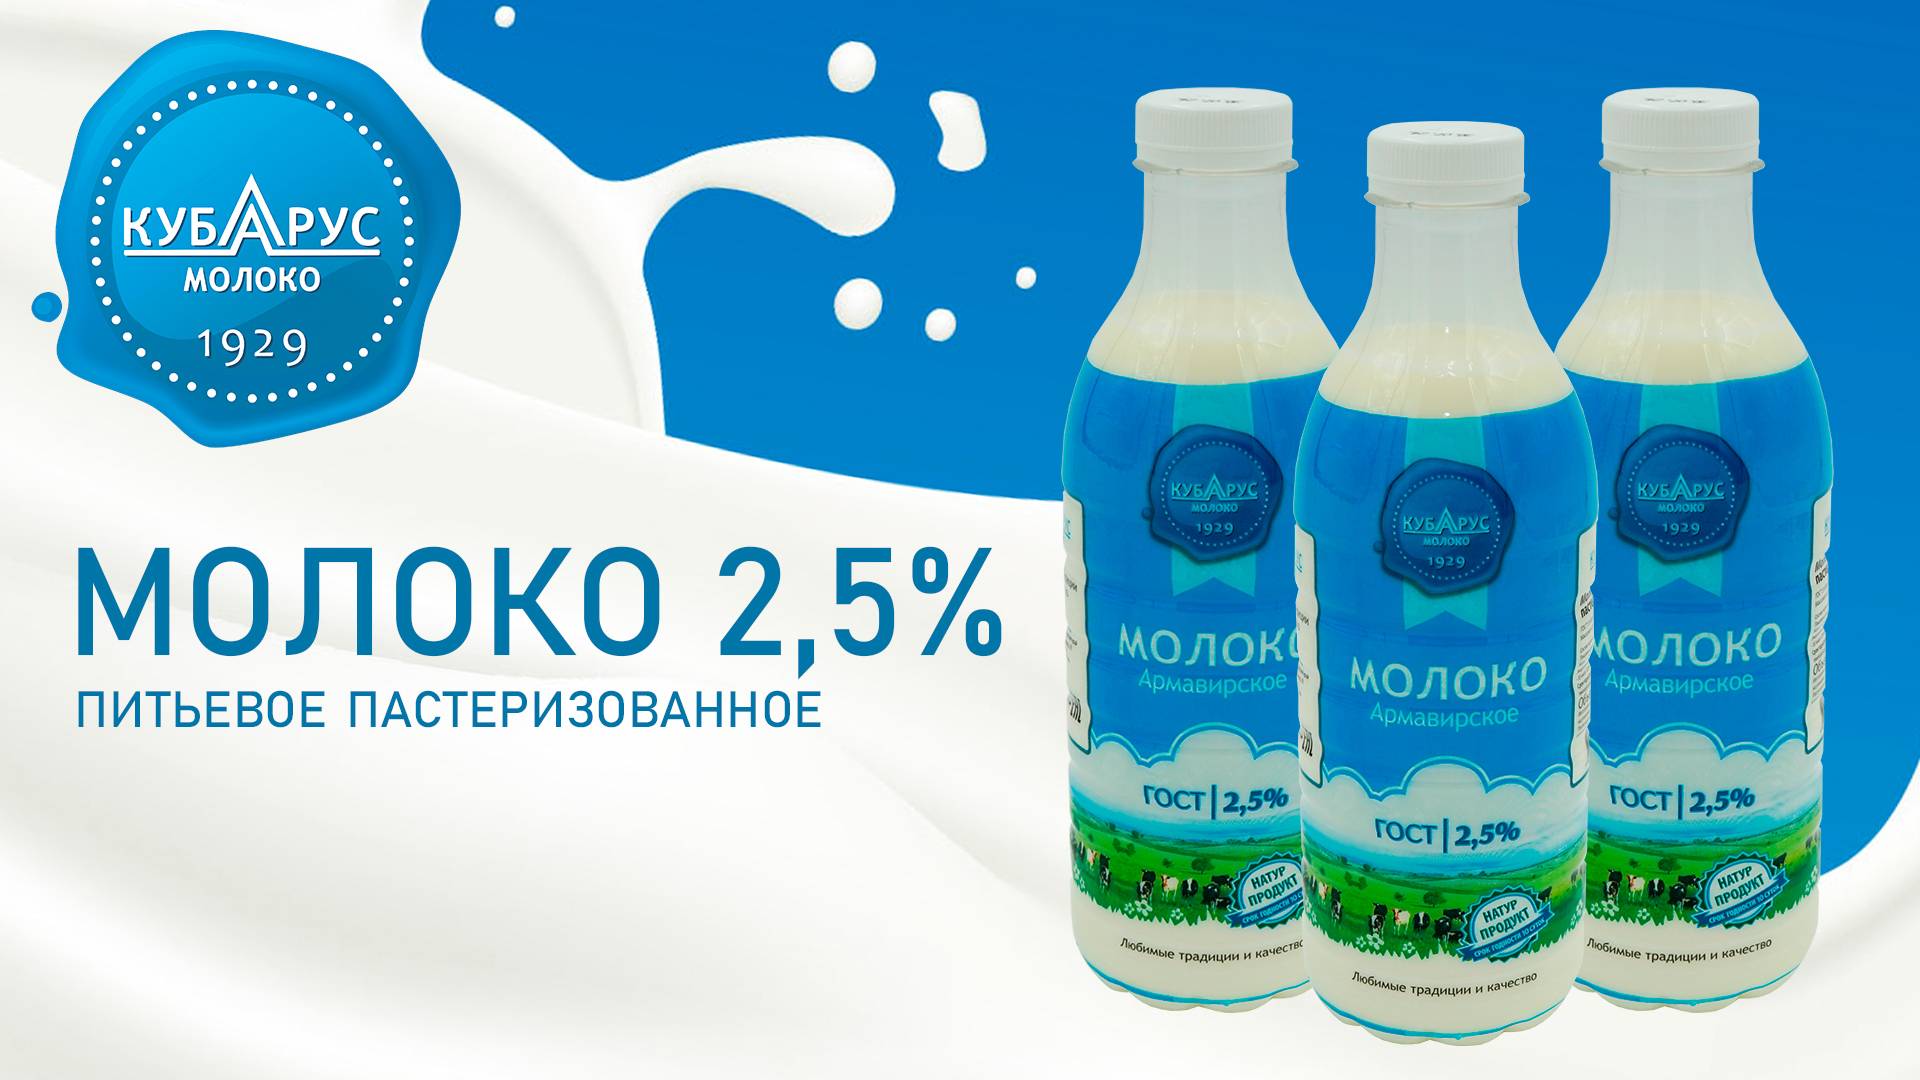 Кубарус - Молоко питьевое пастеризованное 2.5%